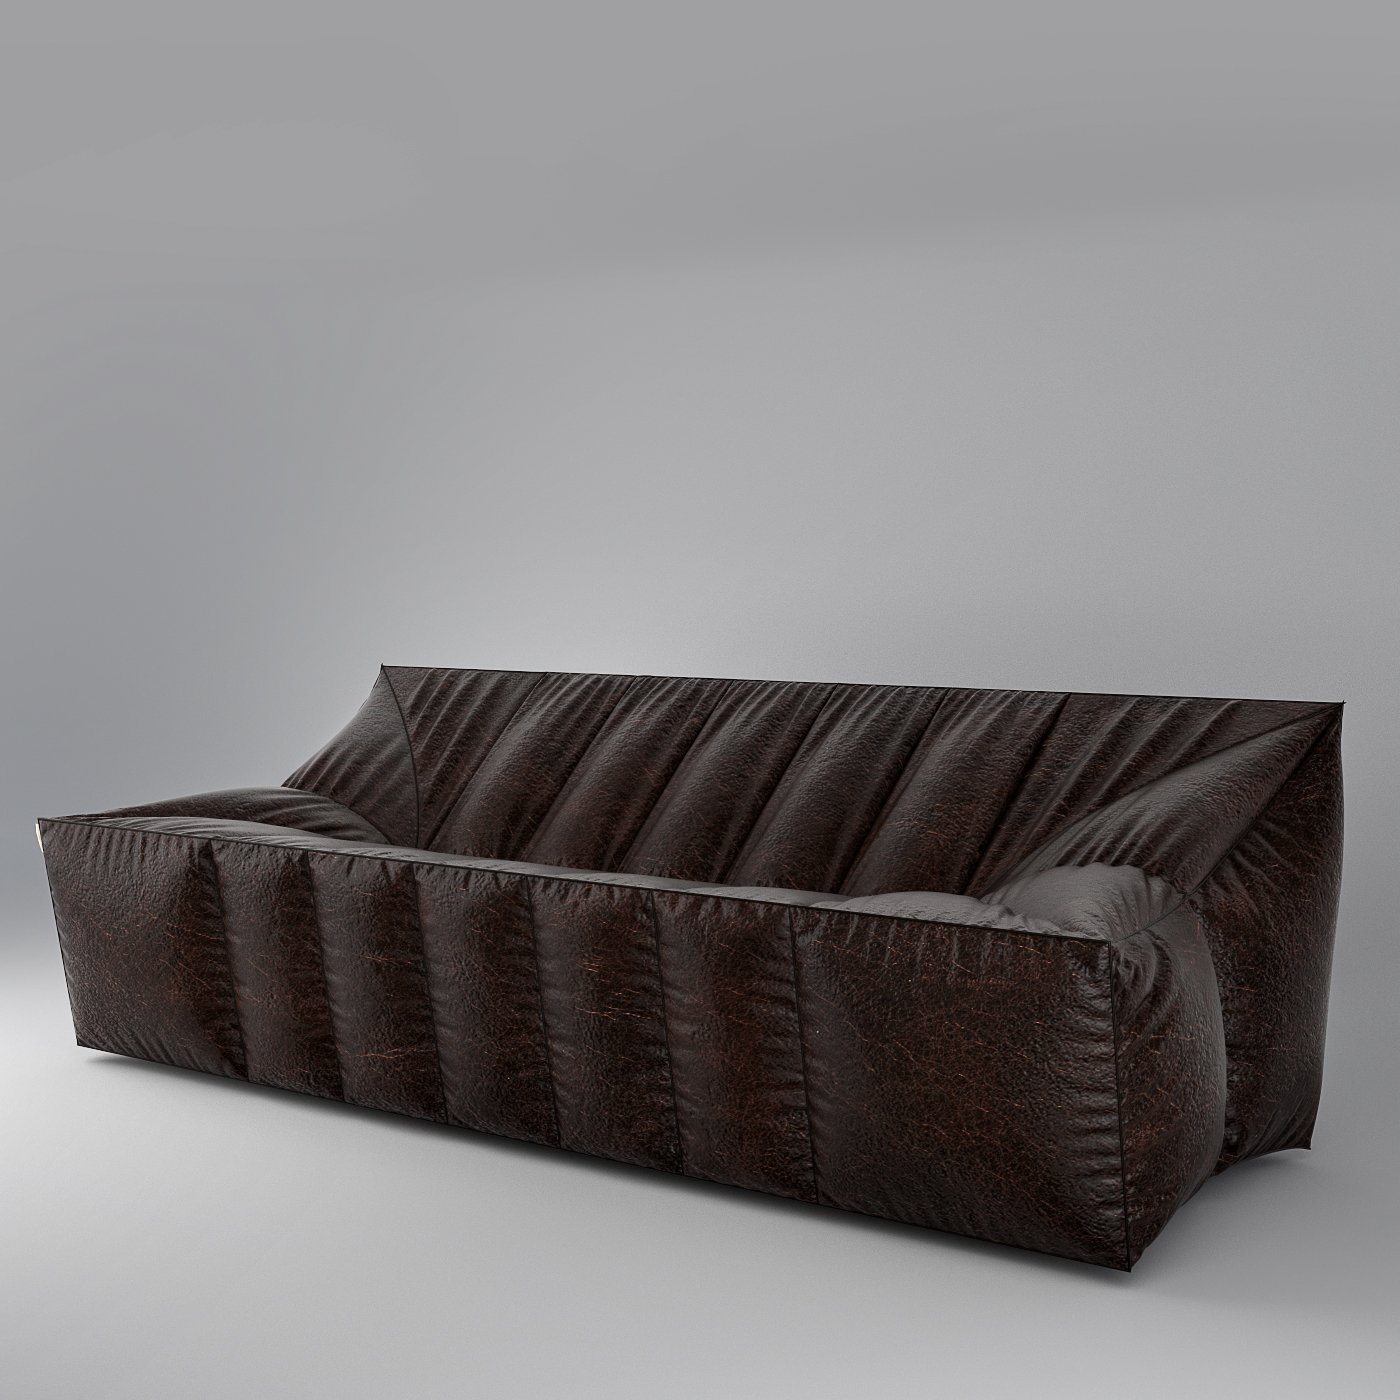 Текстурирование дивана в 3d max